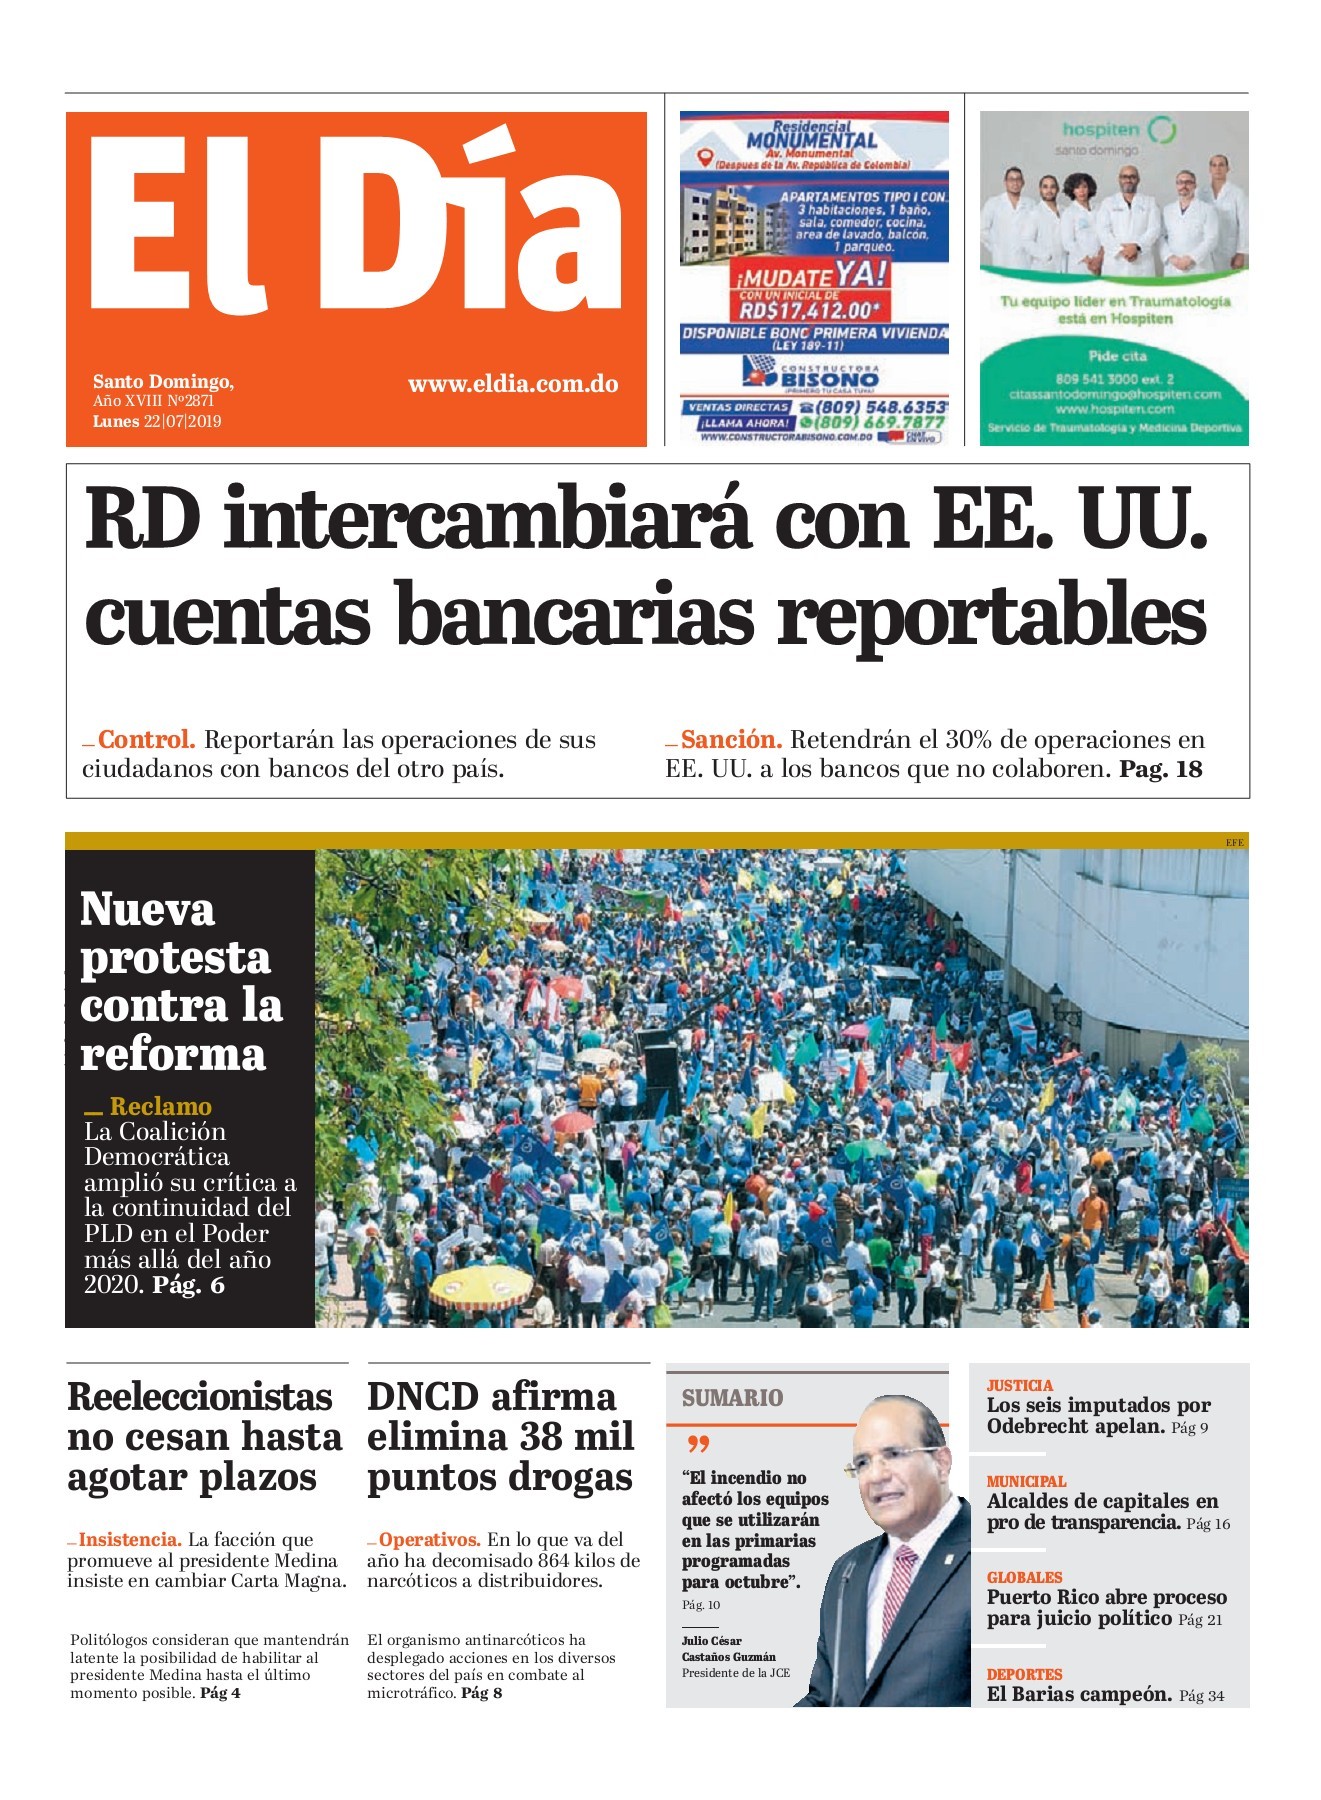 Portada Periódico El Día, Lunes 22 de Julio, 2019